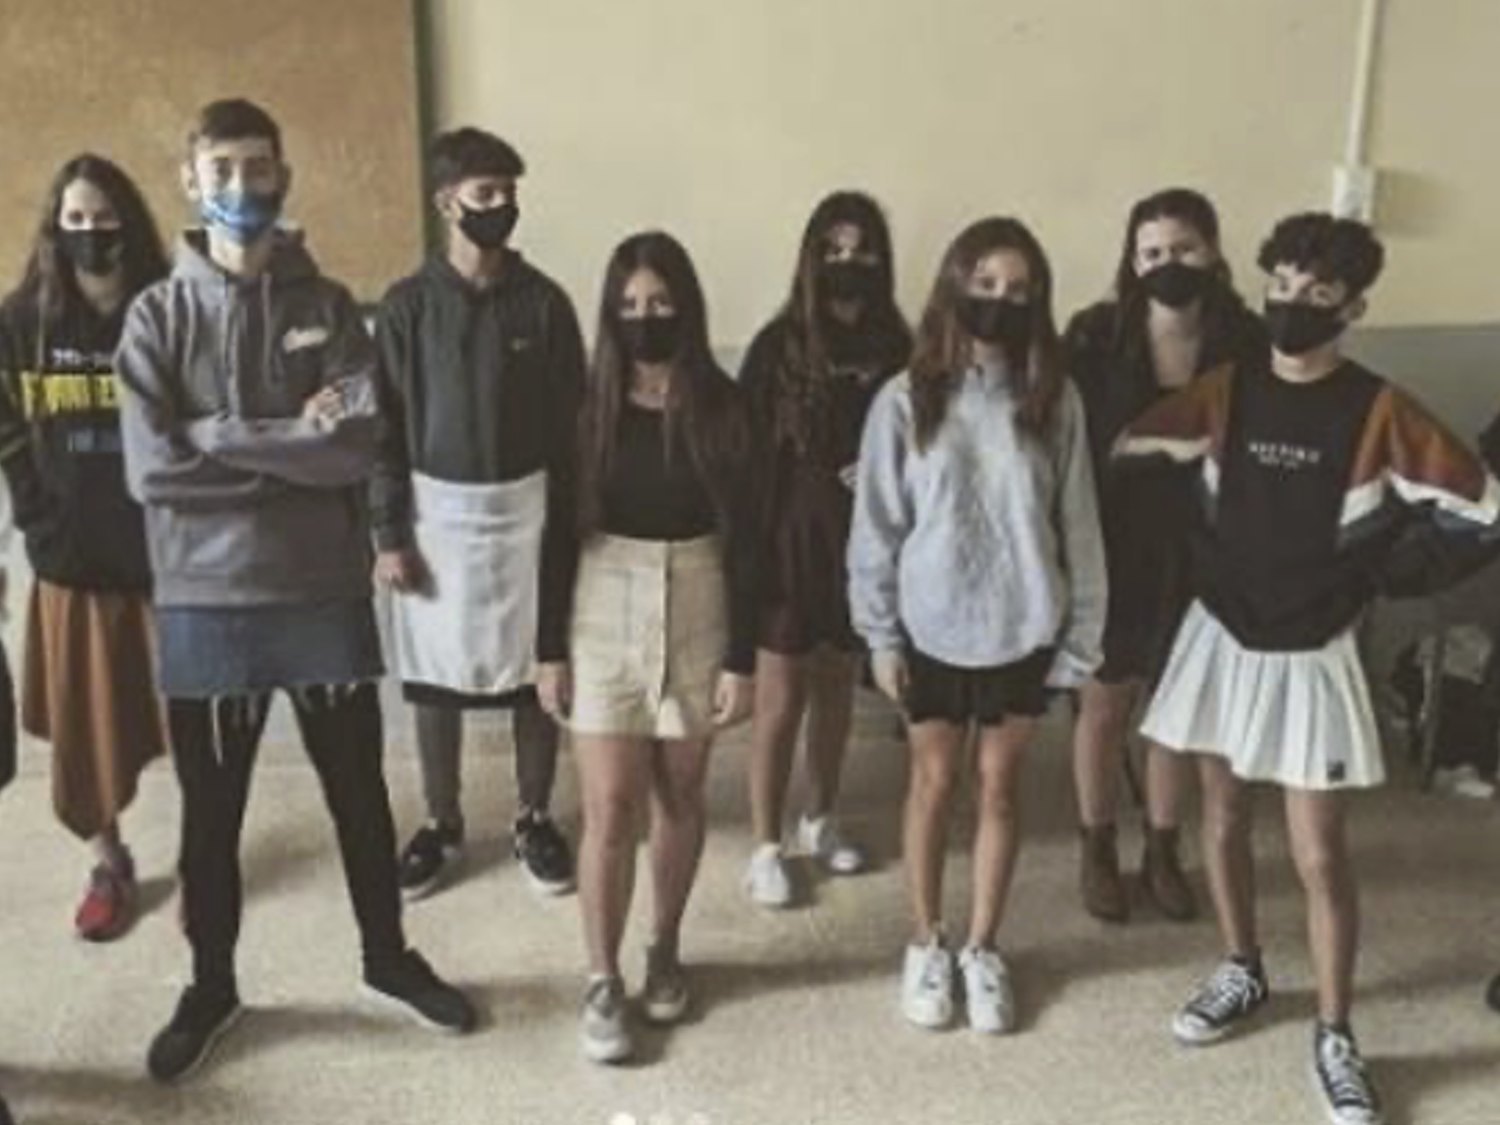 En falda al instituto: el movimiento que recorre España en solidaridad contra el bullying